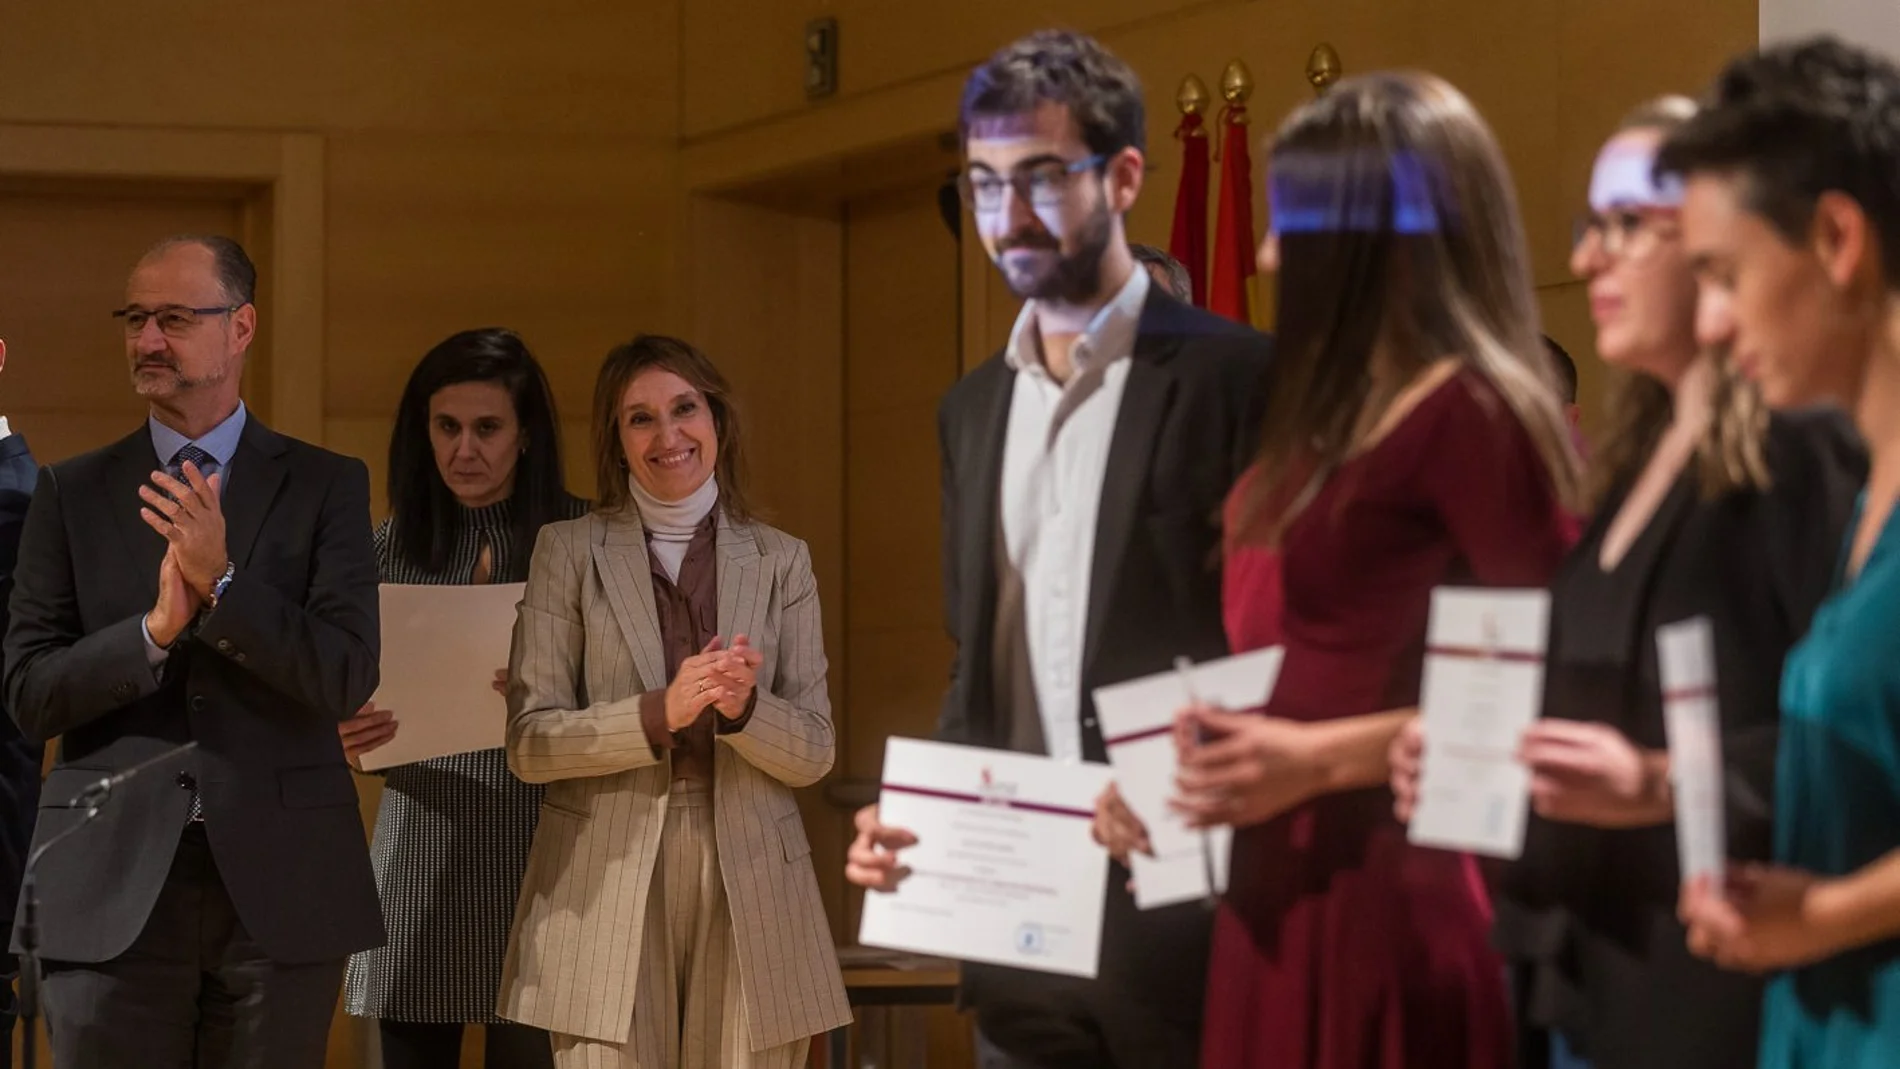 La consejera de Educación, Rocío Lucas, entrega los Premios de Educación 2019. Le acompaña en la imagen el presidente de las Cortes de Castilla y León, Luis Fuentes.